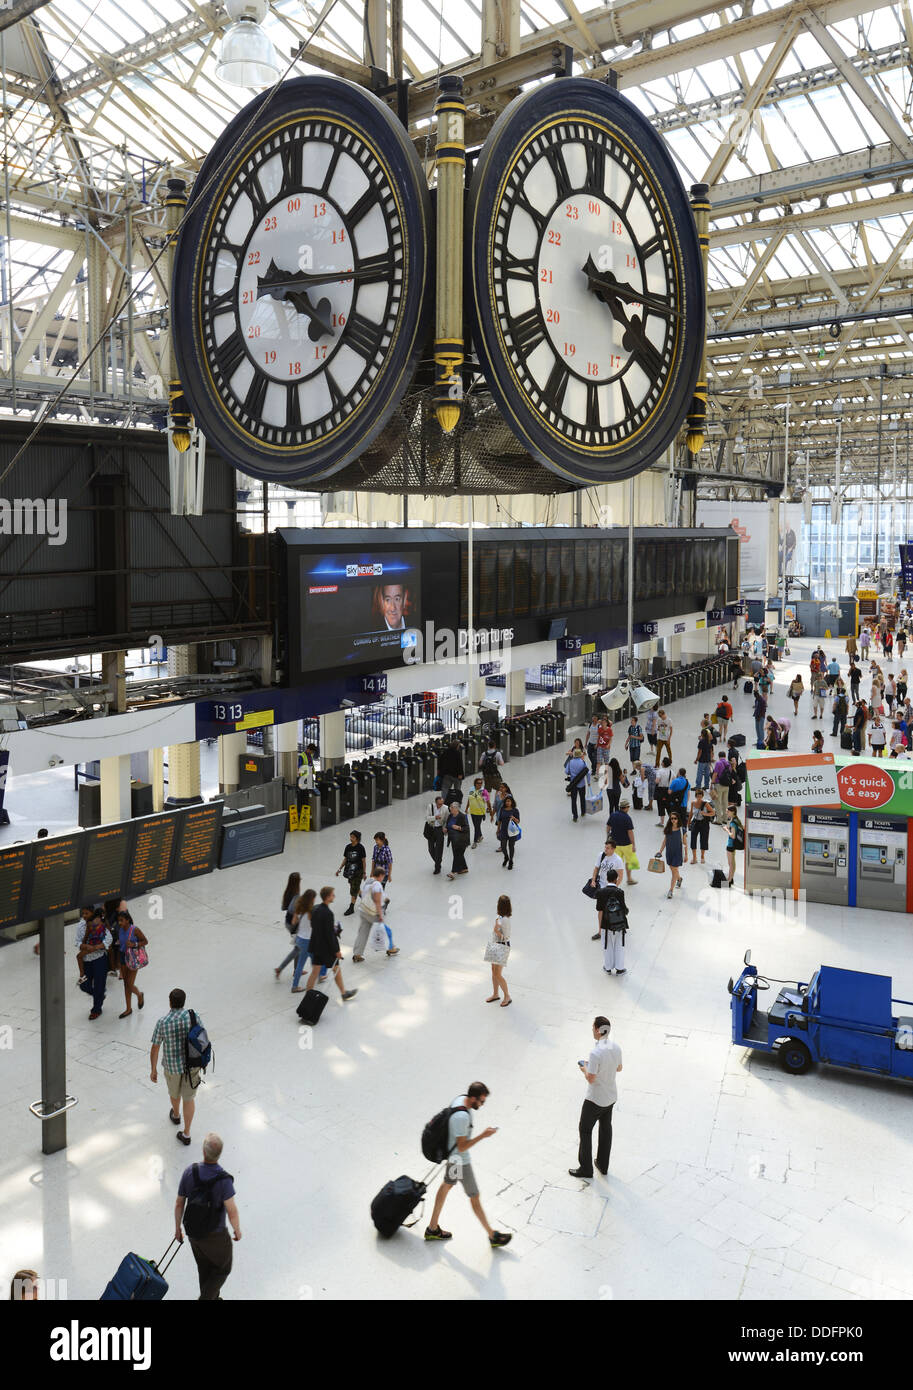 Der Bahnhof Waterloo und Uhr, Waterloo Station, London, England, UK Stockfoto